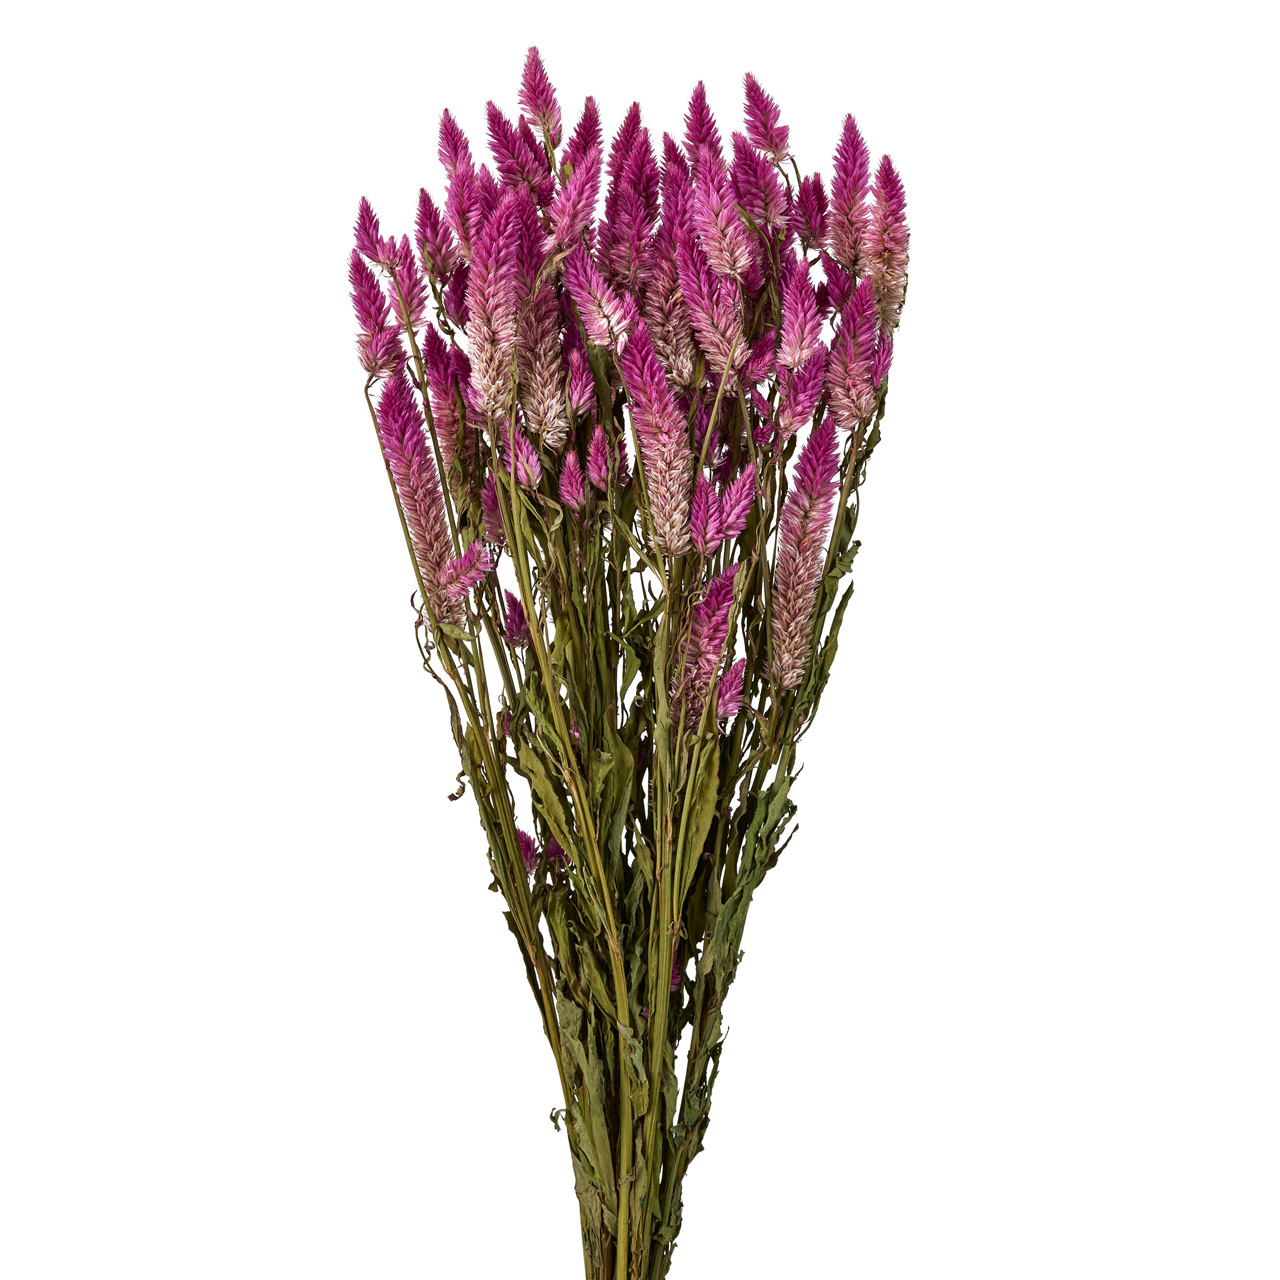 マイフラ 通販 風の花 シャロン ケイトウ ローズ ドライフラワー ナチュラル Dn 017 ローズ ドライフラワー ナチュラル素材 全国にmagiq 花器 花資材などをお届けします